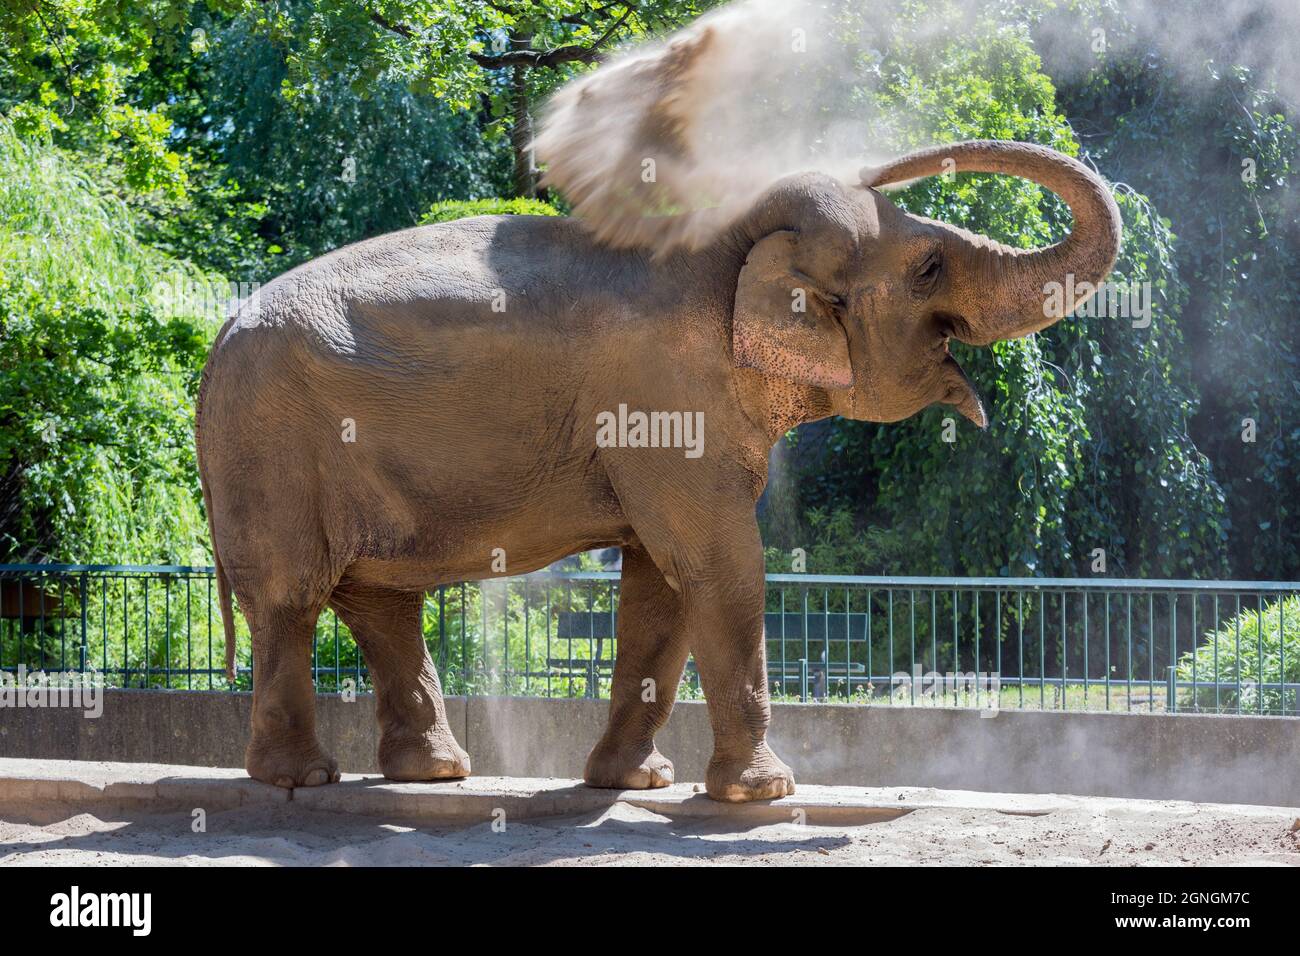 https://c8.alamy.com/compde/2gngm7c/elefant-im-berliner-zoo-wirft-staub-auf-seinen-rucken-zum-sonnenschutz-2gngm7c.jpg